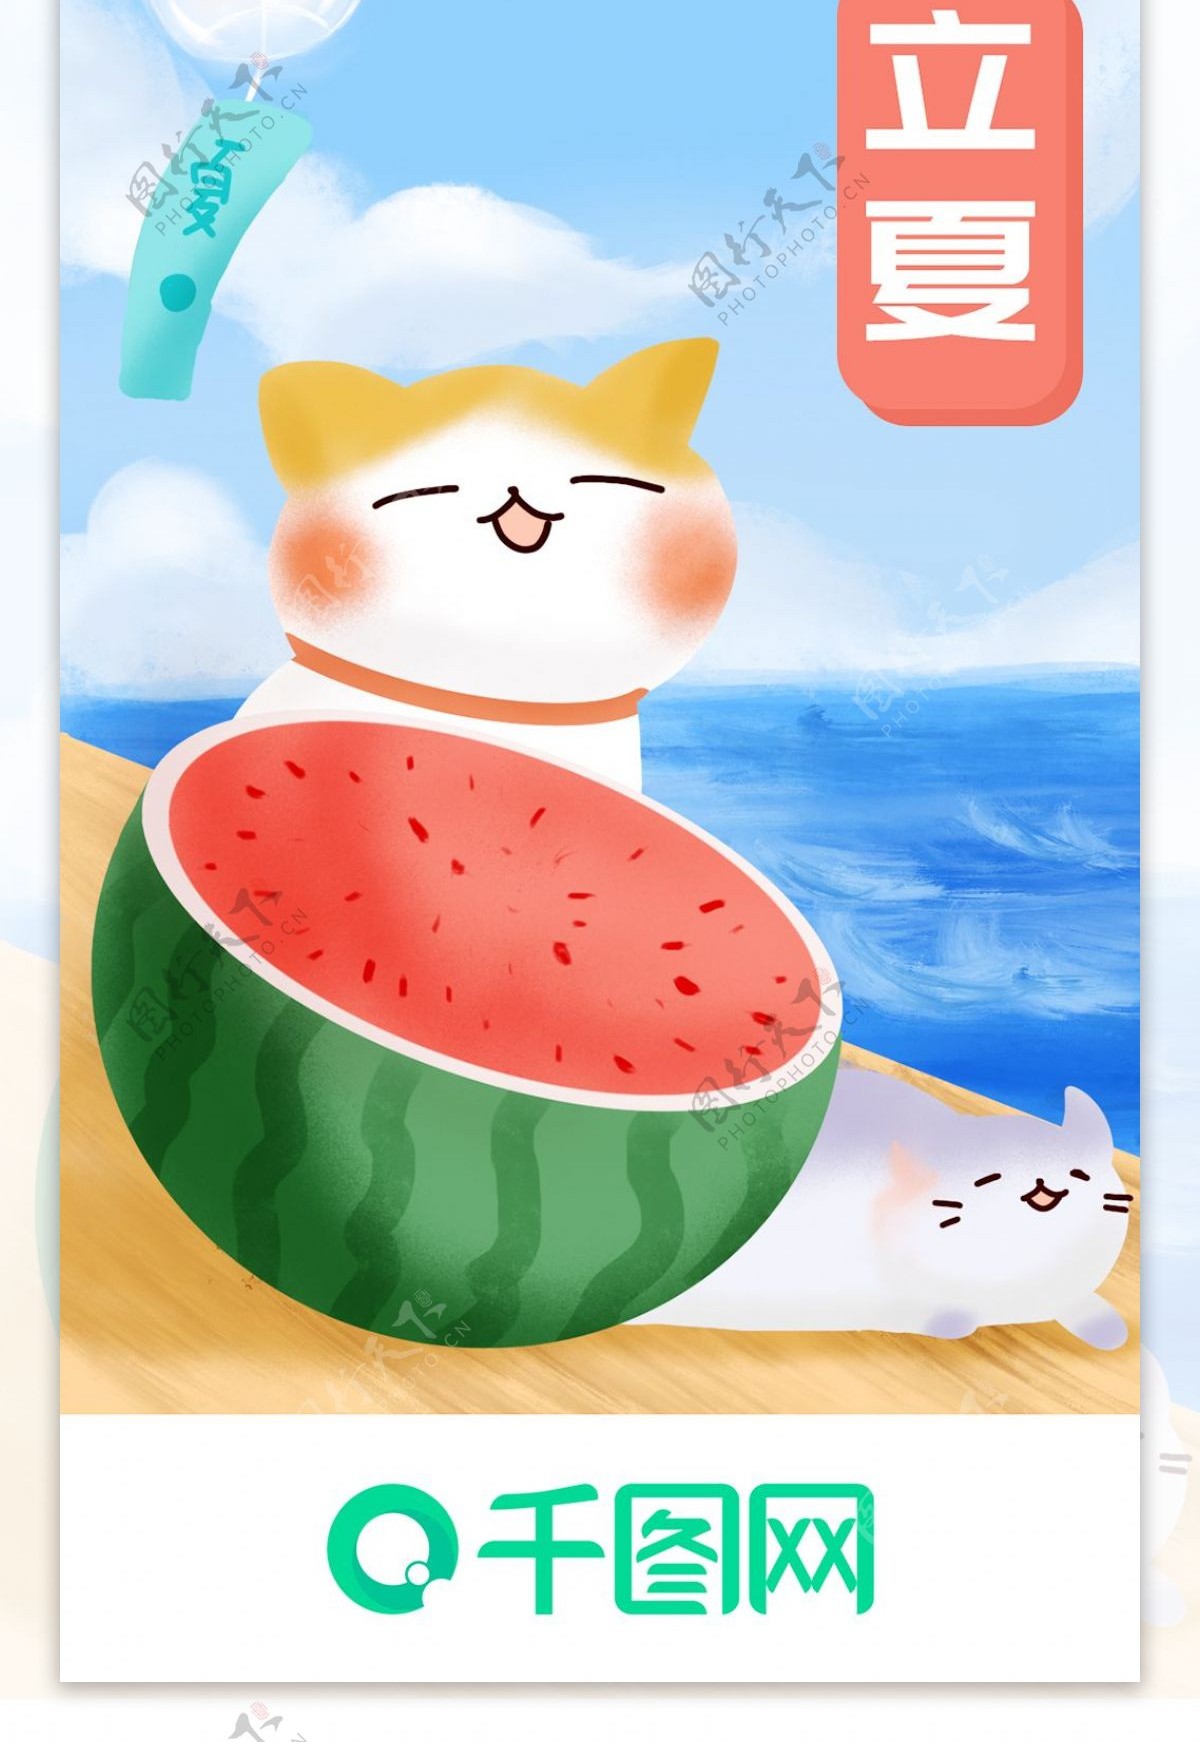 立夏手机app启动页西瓜猫夏天